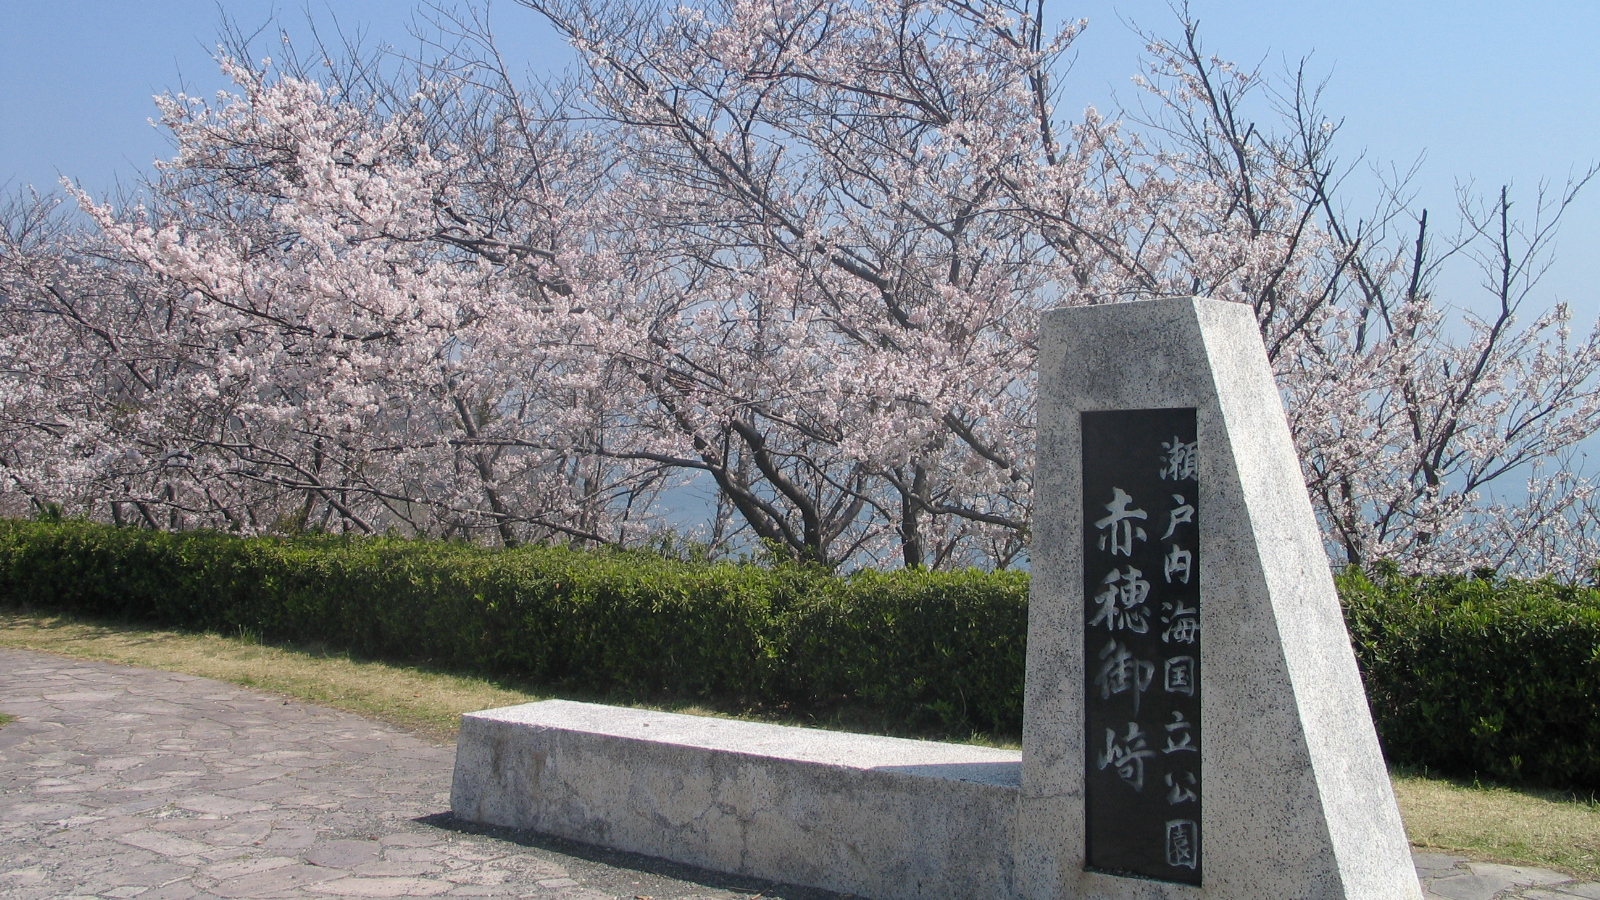  赤穂御崎の桜毎年、さくら祭りも開催されます。